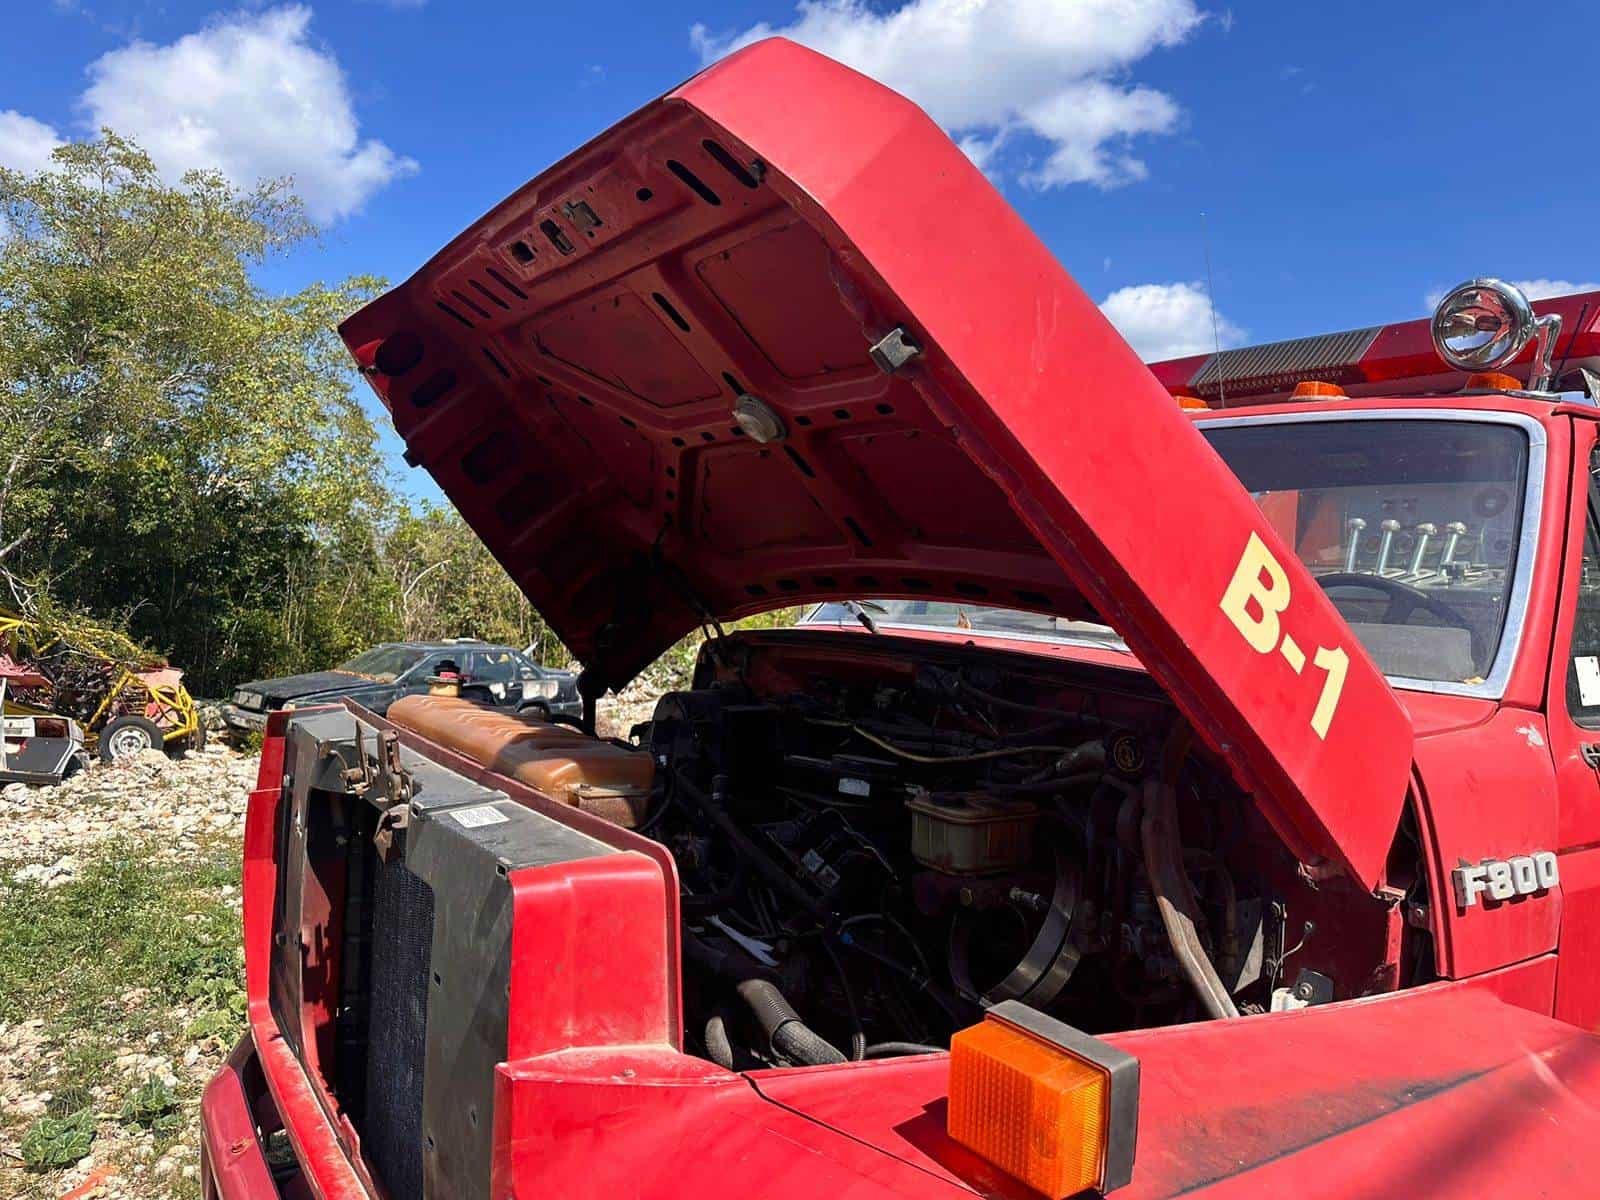 El camión de bomberos de la comunidad lleva un año dañado.